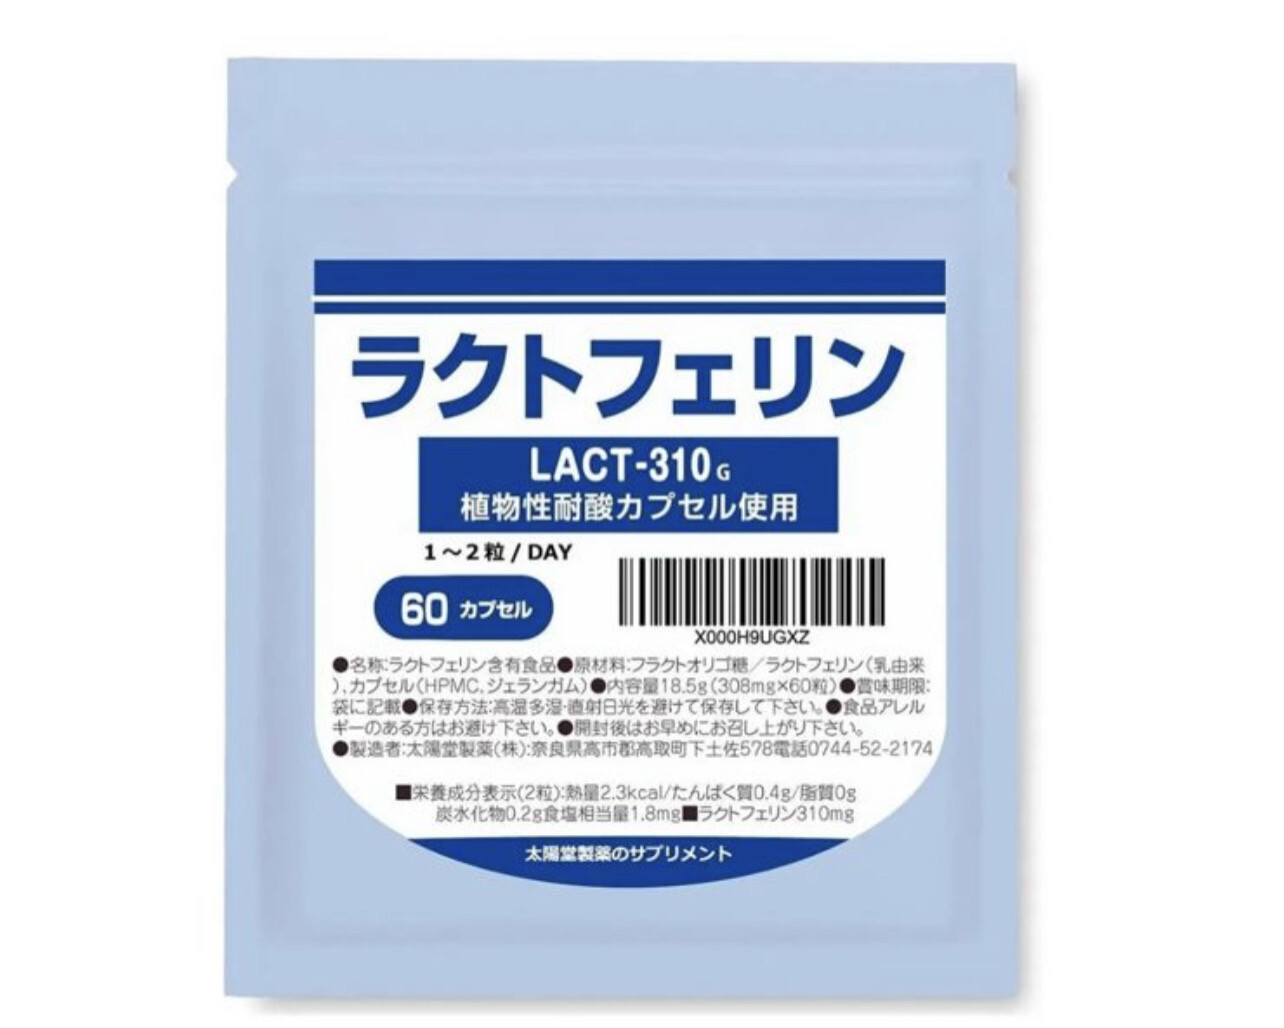 Порошок лактоферрина в капсулах Taiyoudo Pharmaceutical Lactoferrin на 30 дней